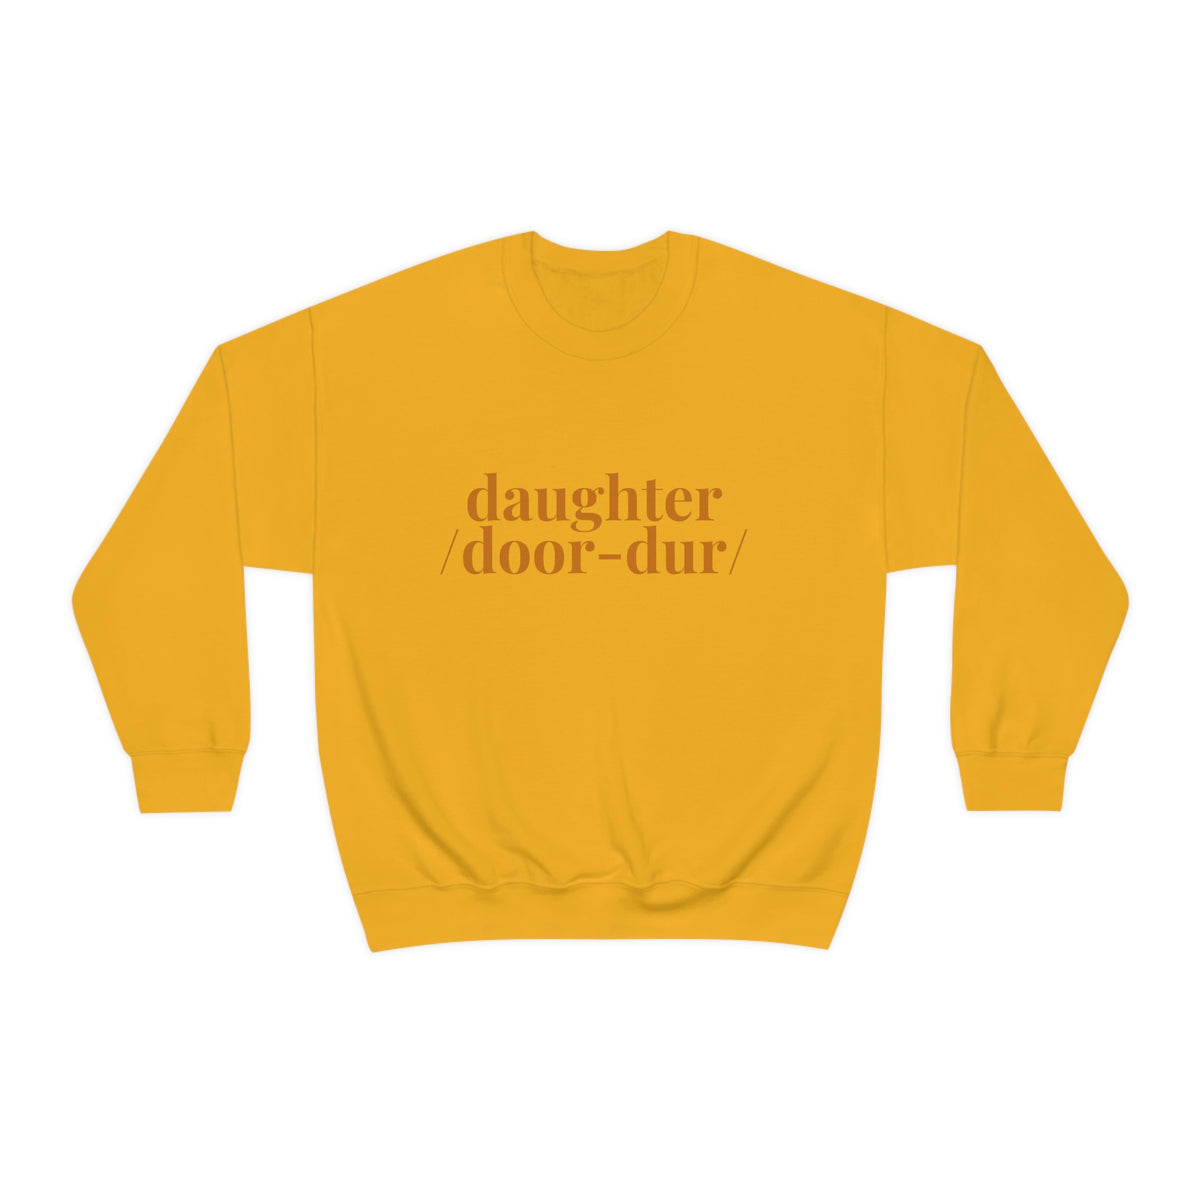 Delco Sweatshirt, Delaware County Top, Delco Slang Humor, Daughter Crewneck, Local Sweat Shirt, Durdur Pullover, Delco Accent Top